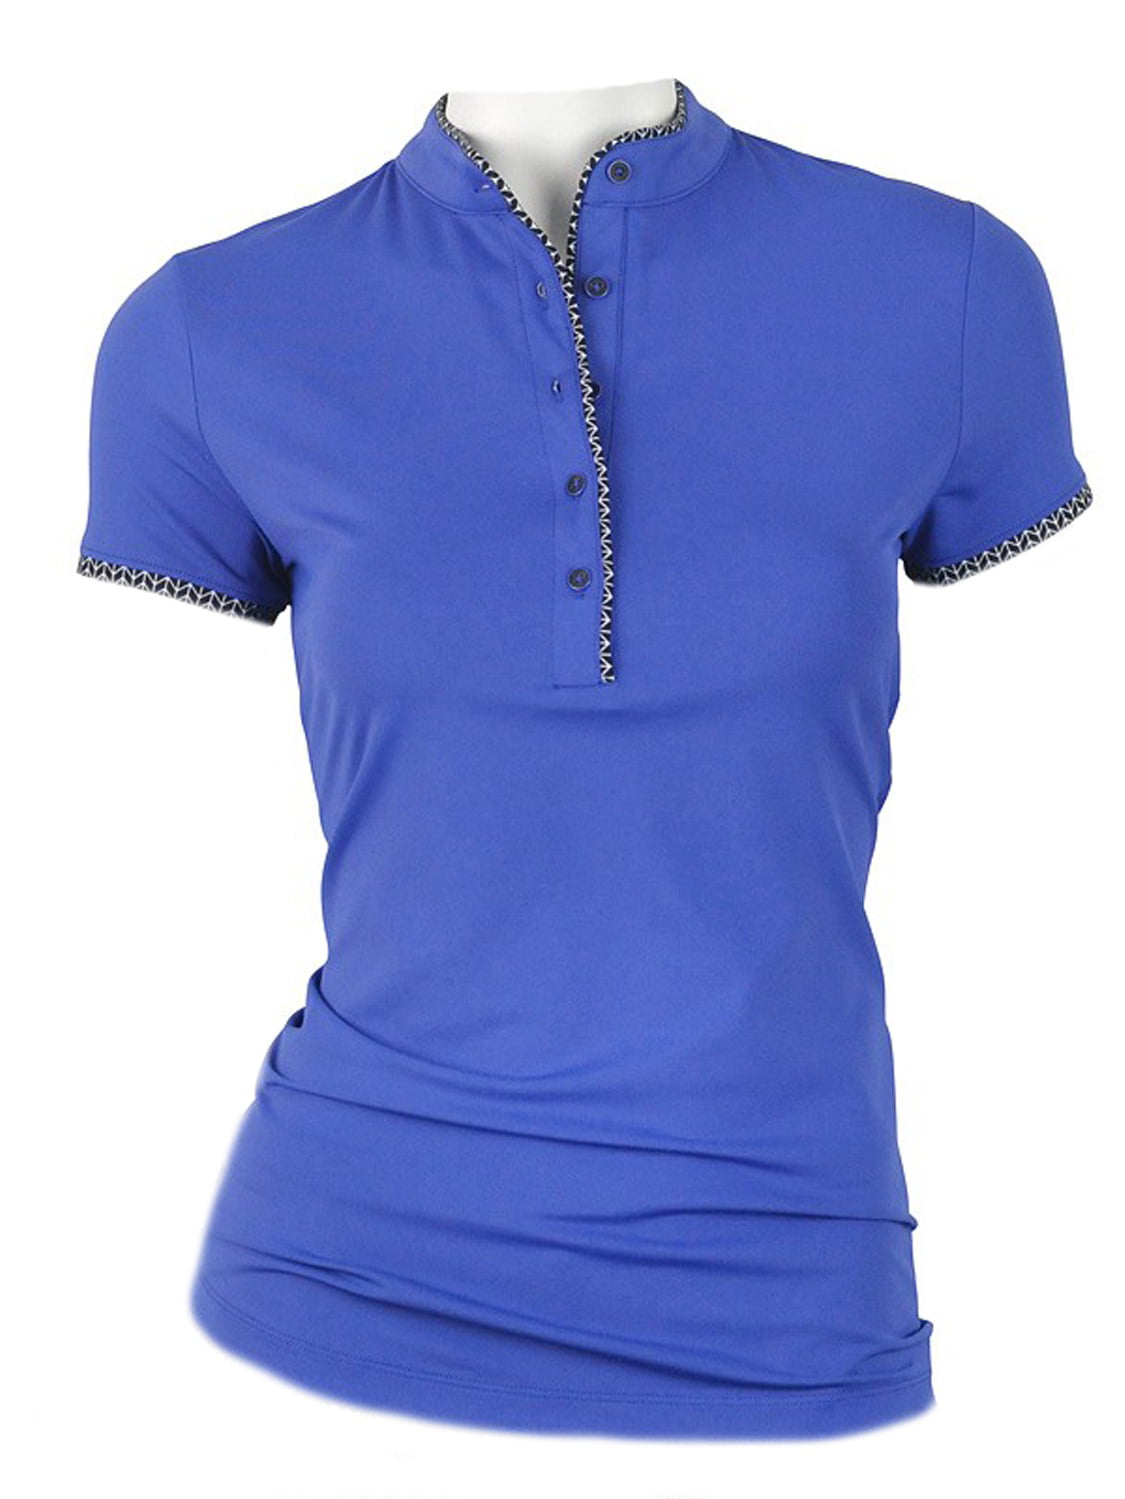 blue jays golf shirt